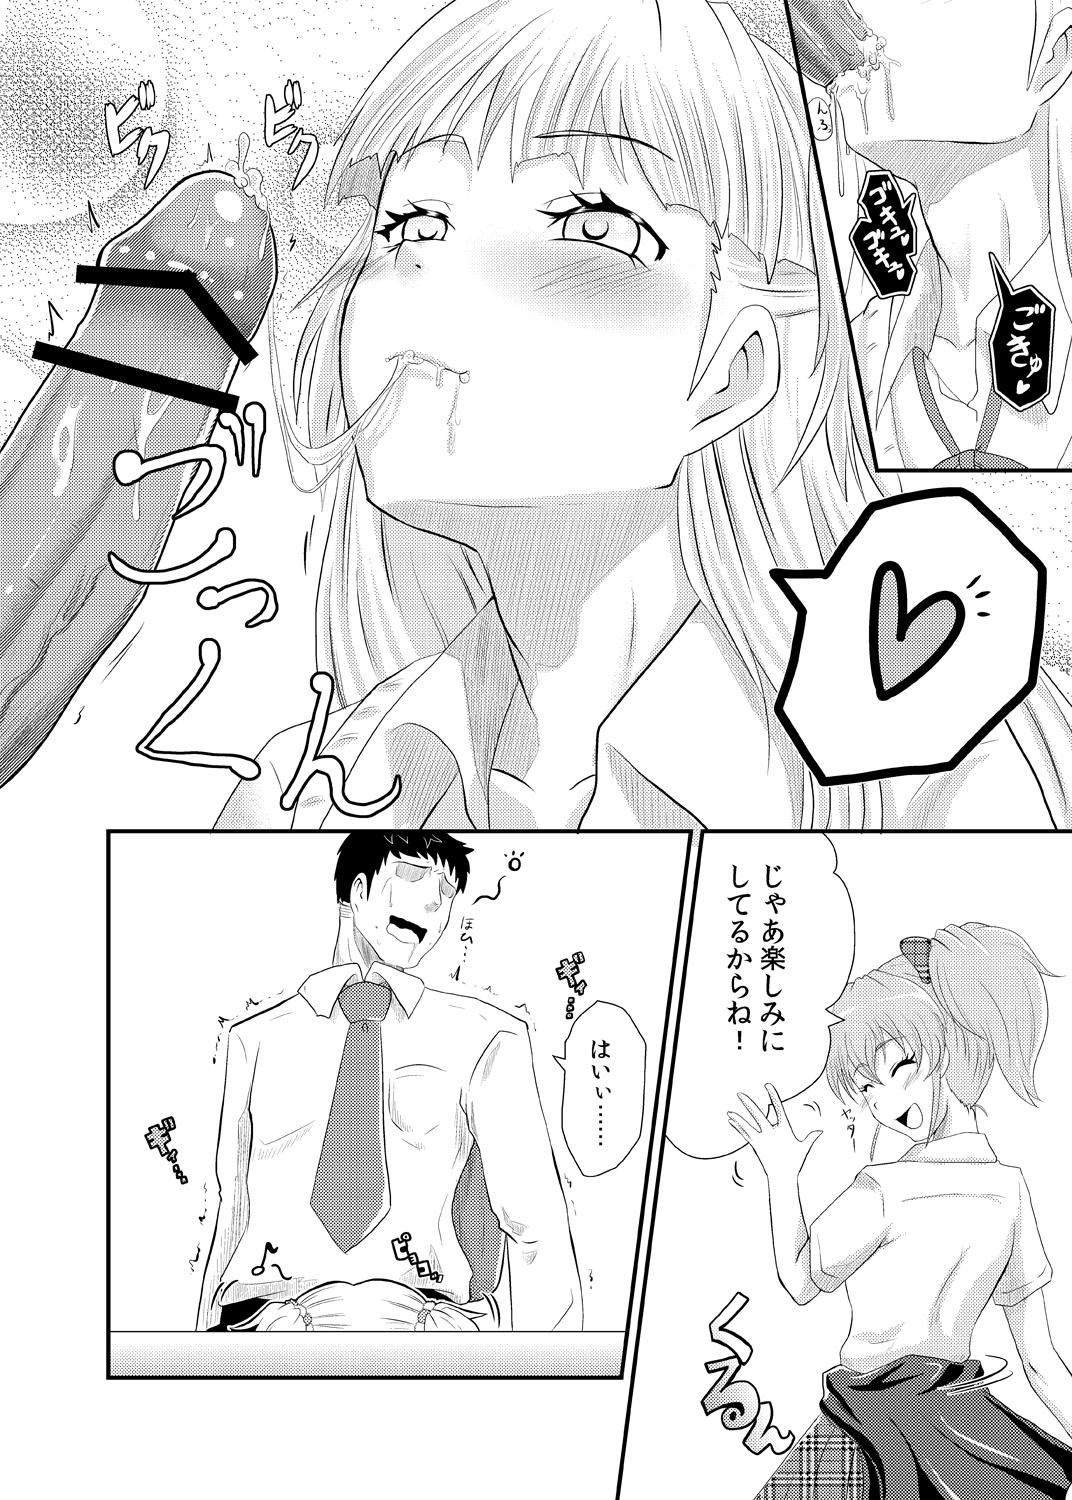 Groupfuck Rika-san no Manga. - The idolmaster Femboy - Page 10